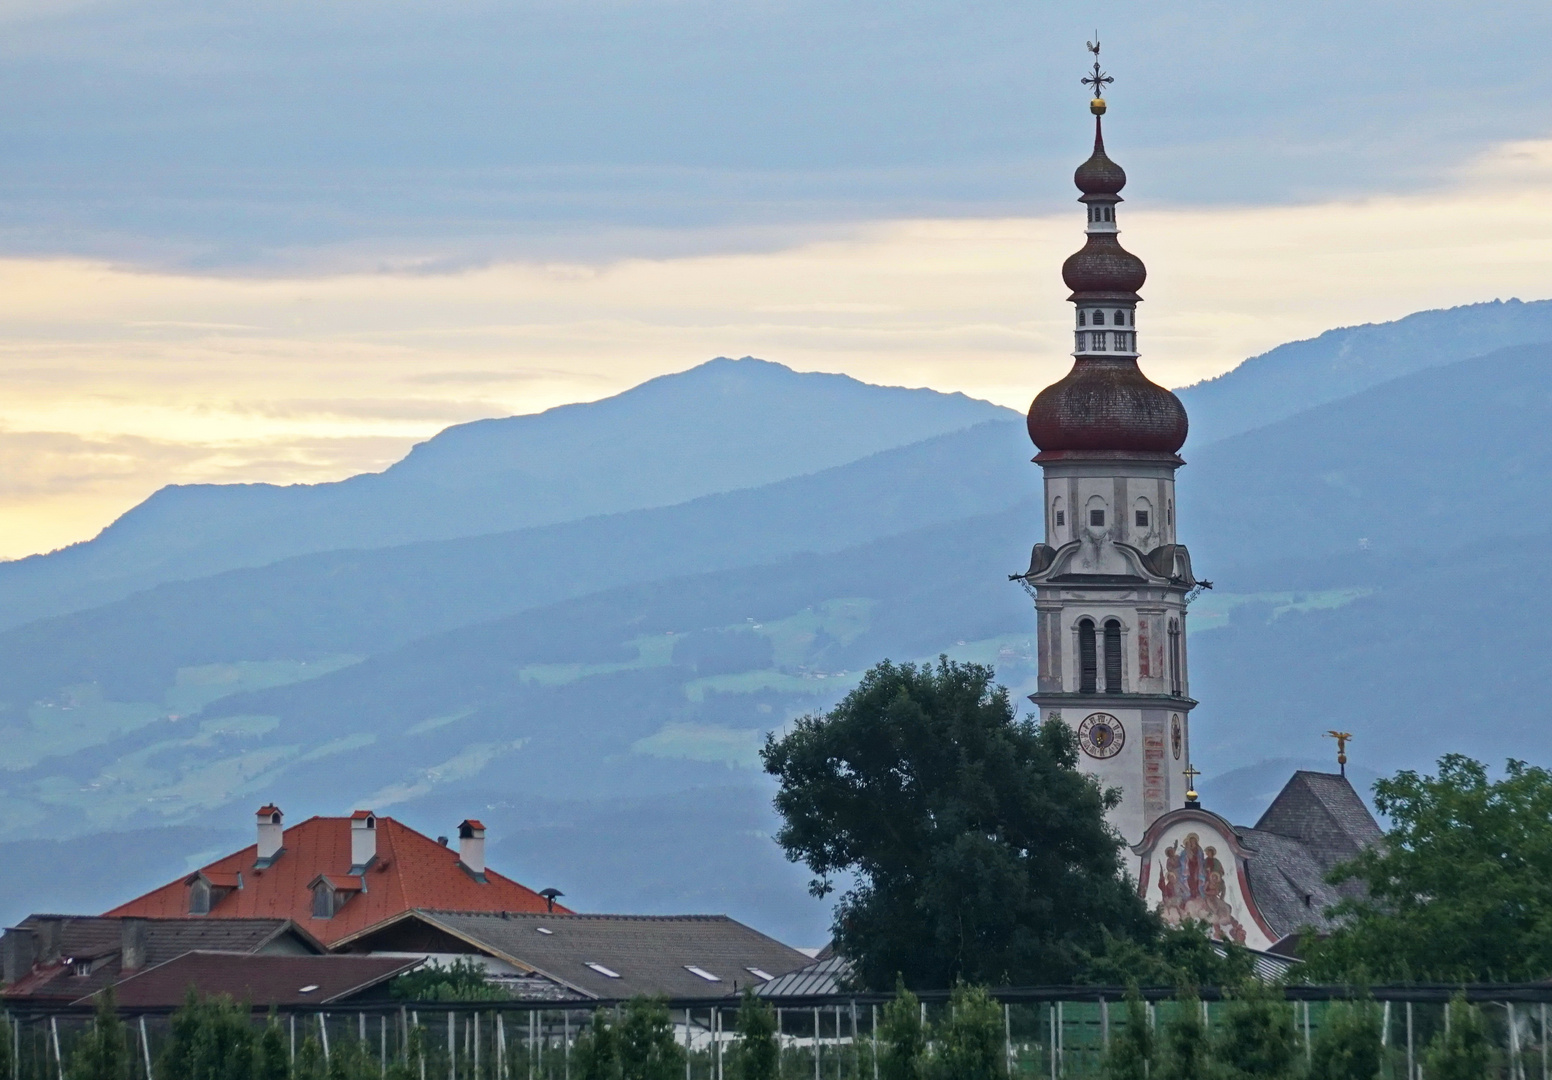 Pfarrkirche von Kematen in Tirol